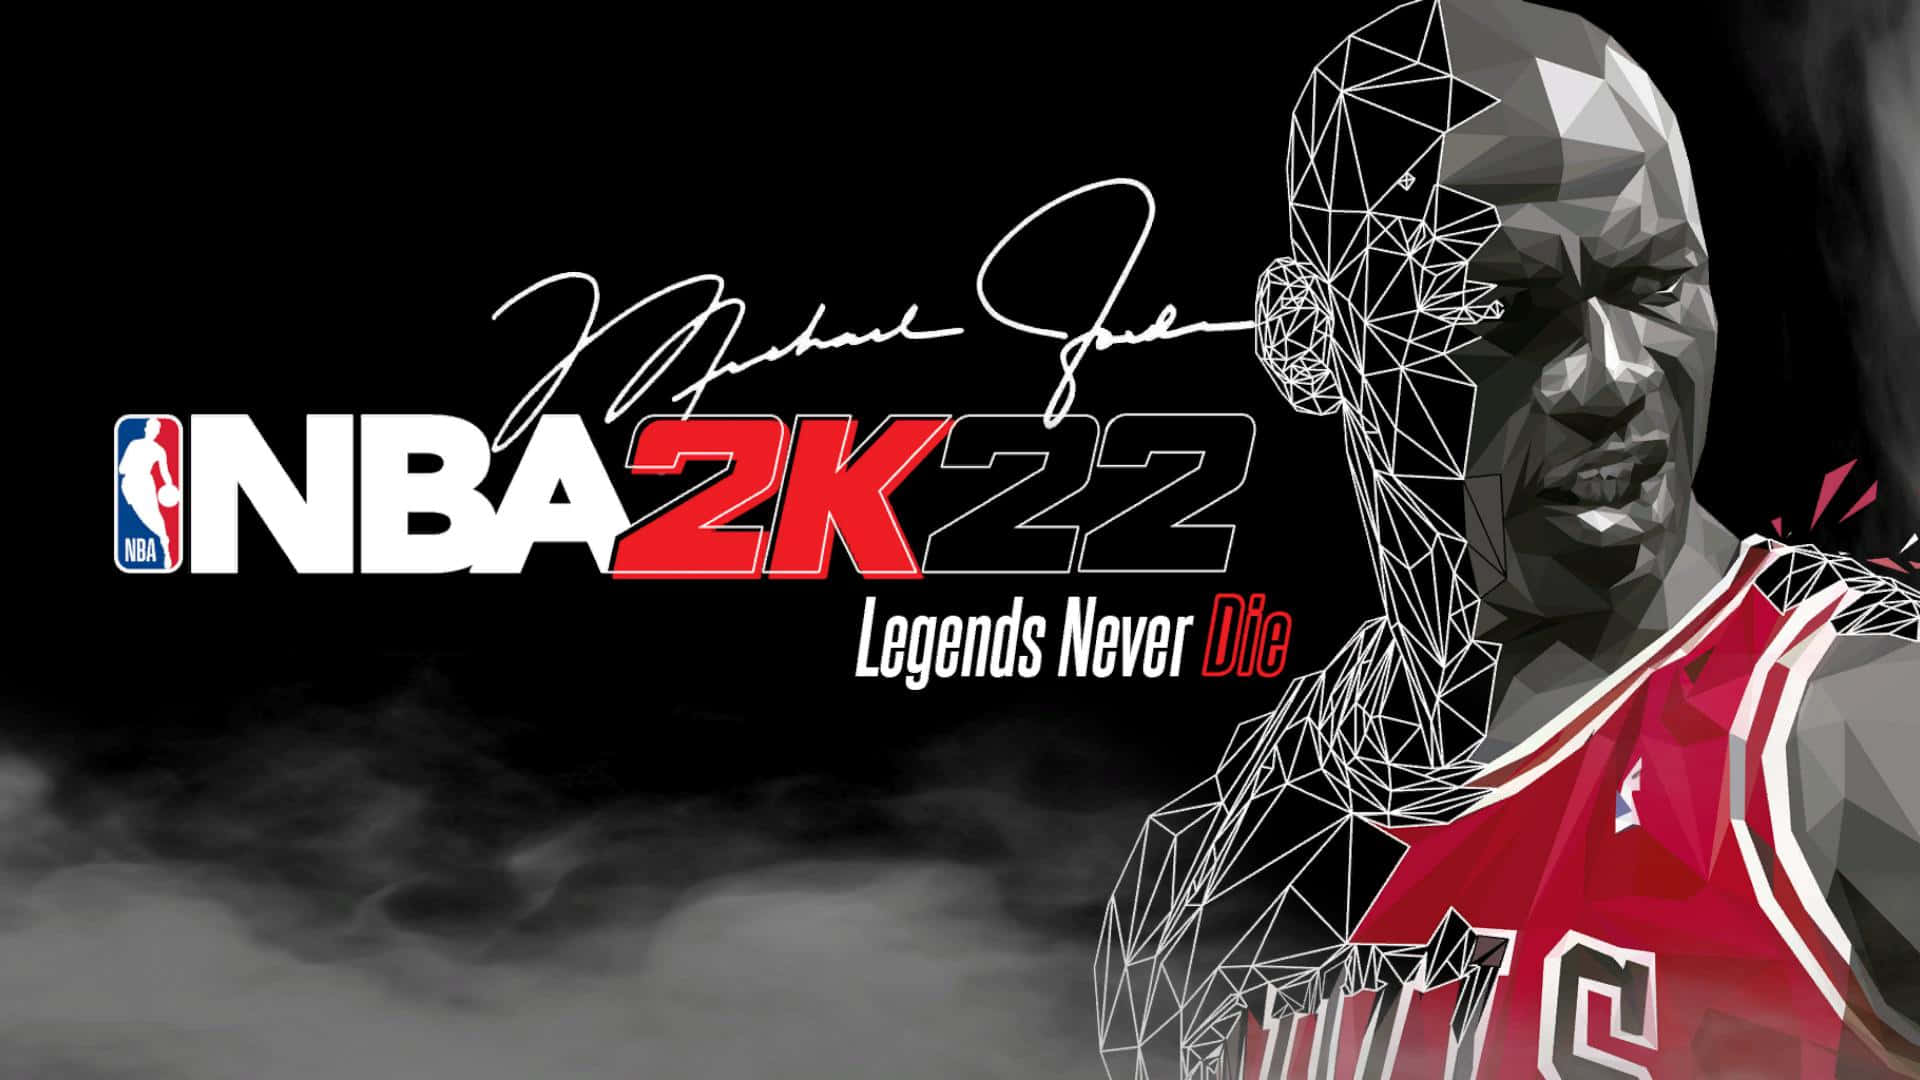 Michael Jordan Nba 2k22 Video Game Picture